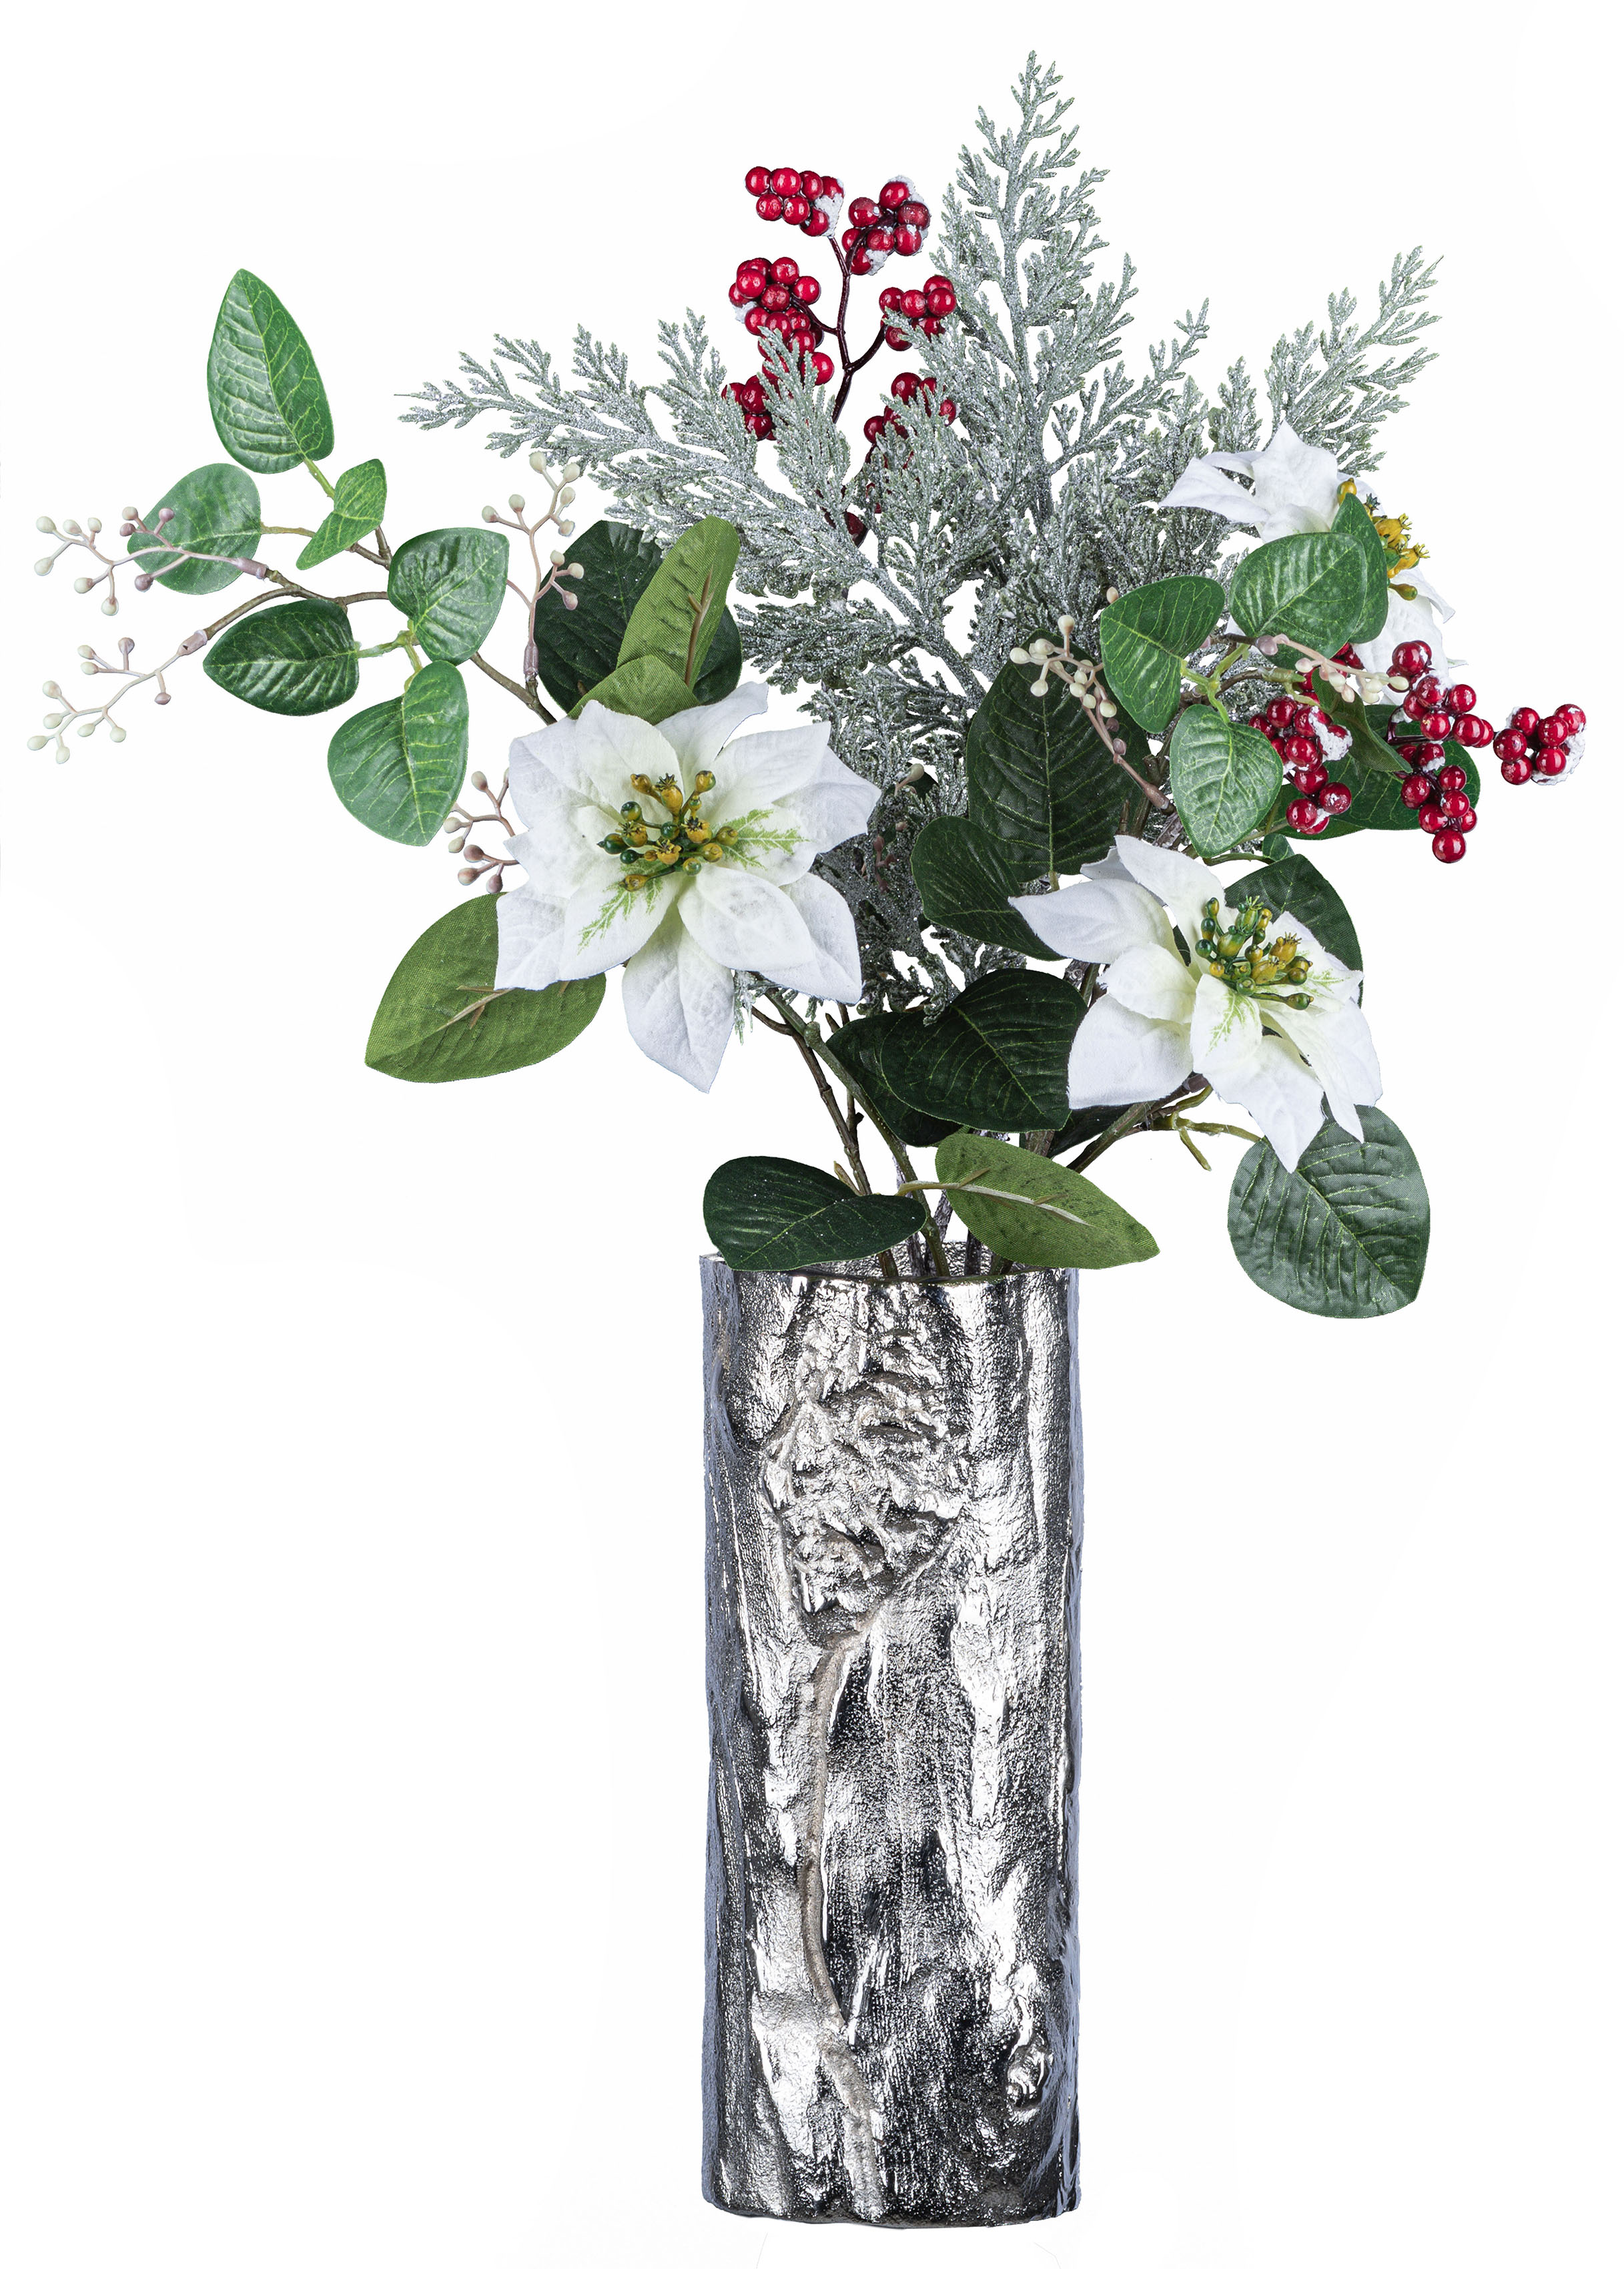 Vasen aus Aluminium online kaufen ▷ Alu Vasen | BAUR